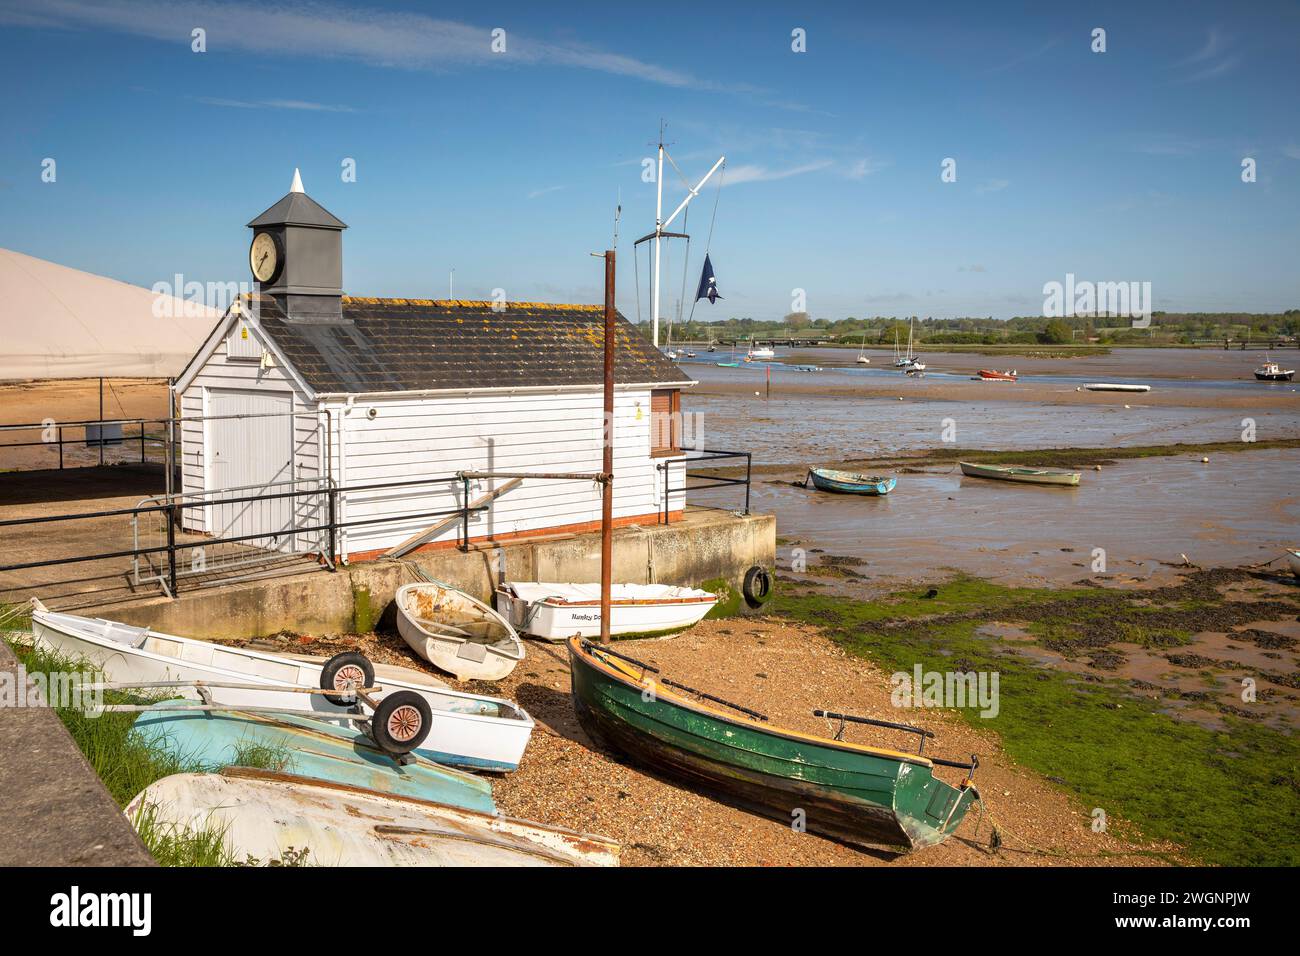 Royaume-Uni, Angleterre, Essex, Manningtree, les murs, bateaux hauts et secs sur le rivage au Stour Sailing Club Boathouse Banque D'Images